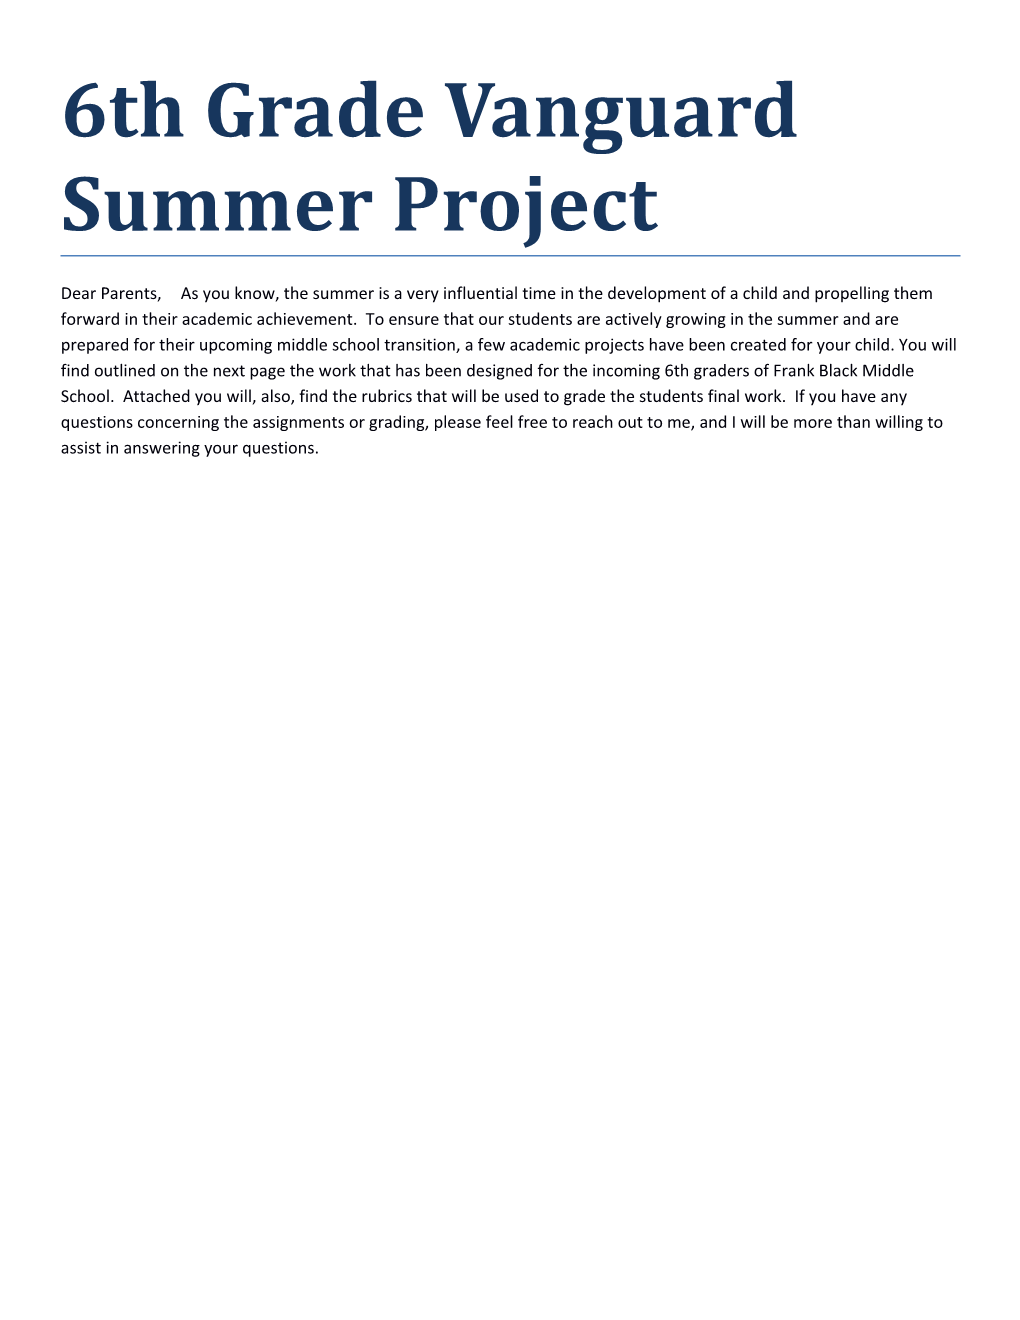 6Th Grade Vanguard Summer Project